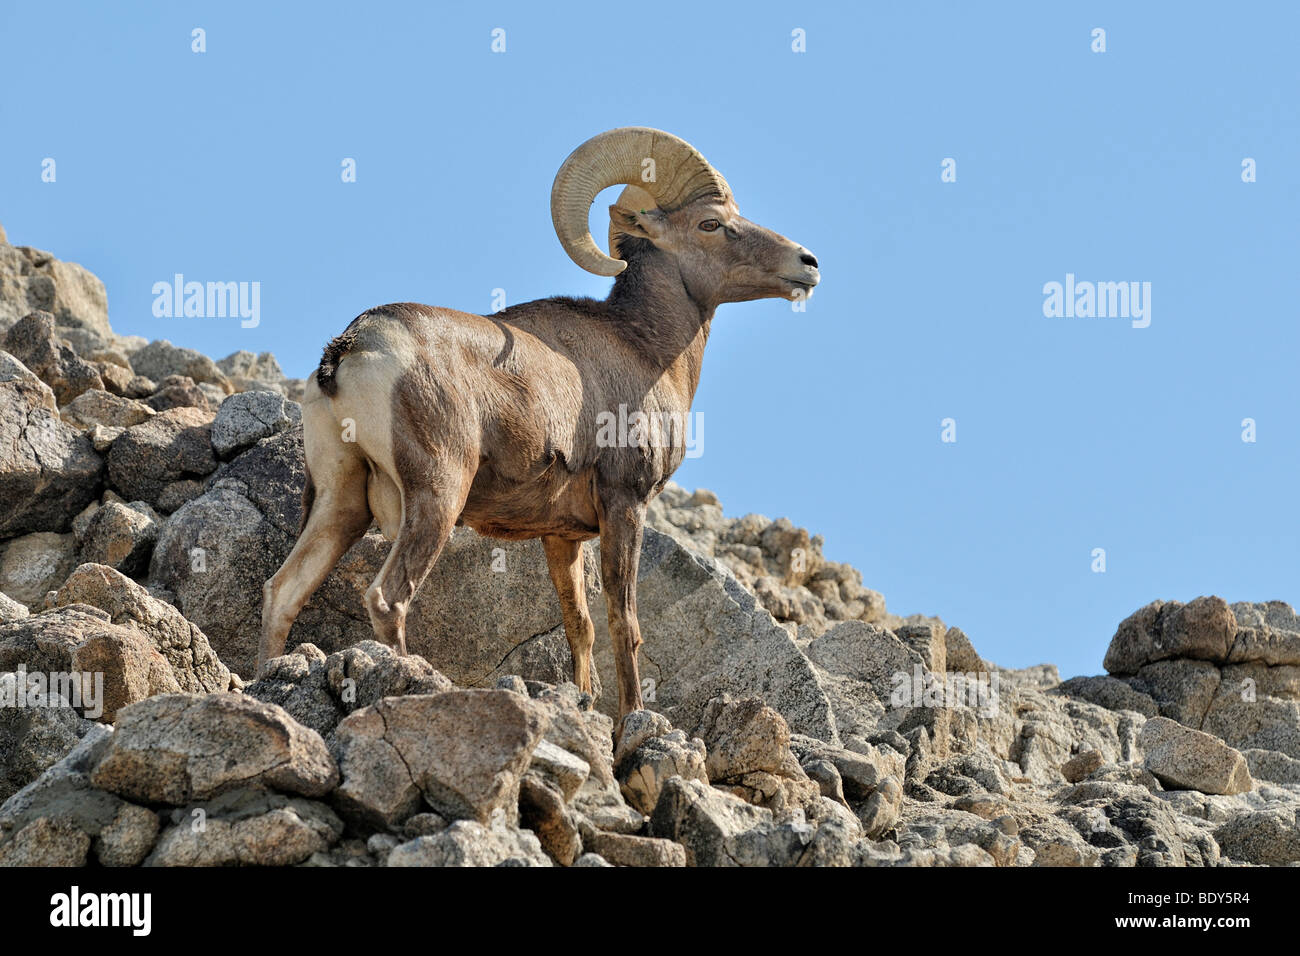 Male Bighorn sheep (Ovis canadensis), Borrego Palm Canyon, Anza Borrega Desert State Park, Borrego Springs, Southern California Stock Photo